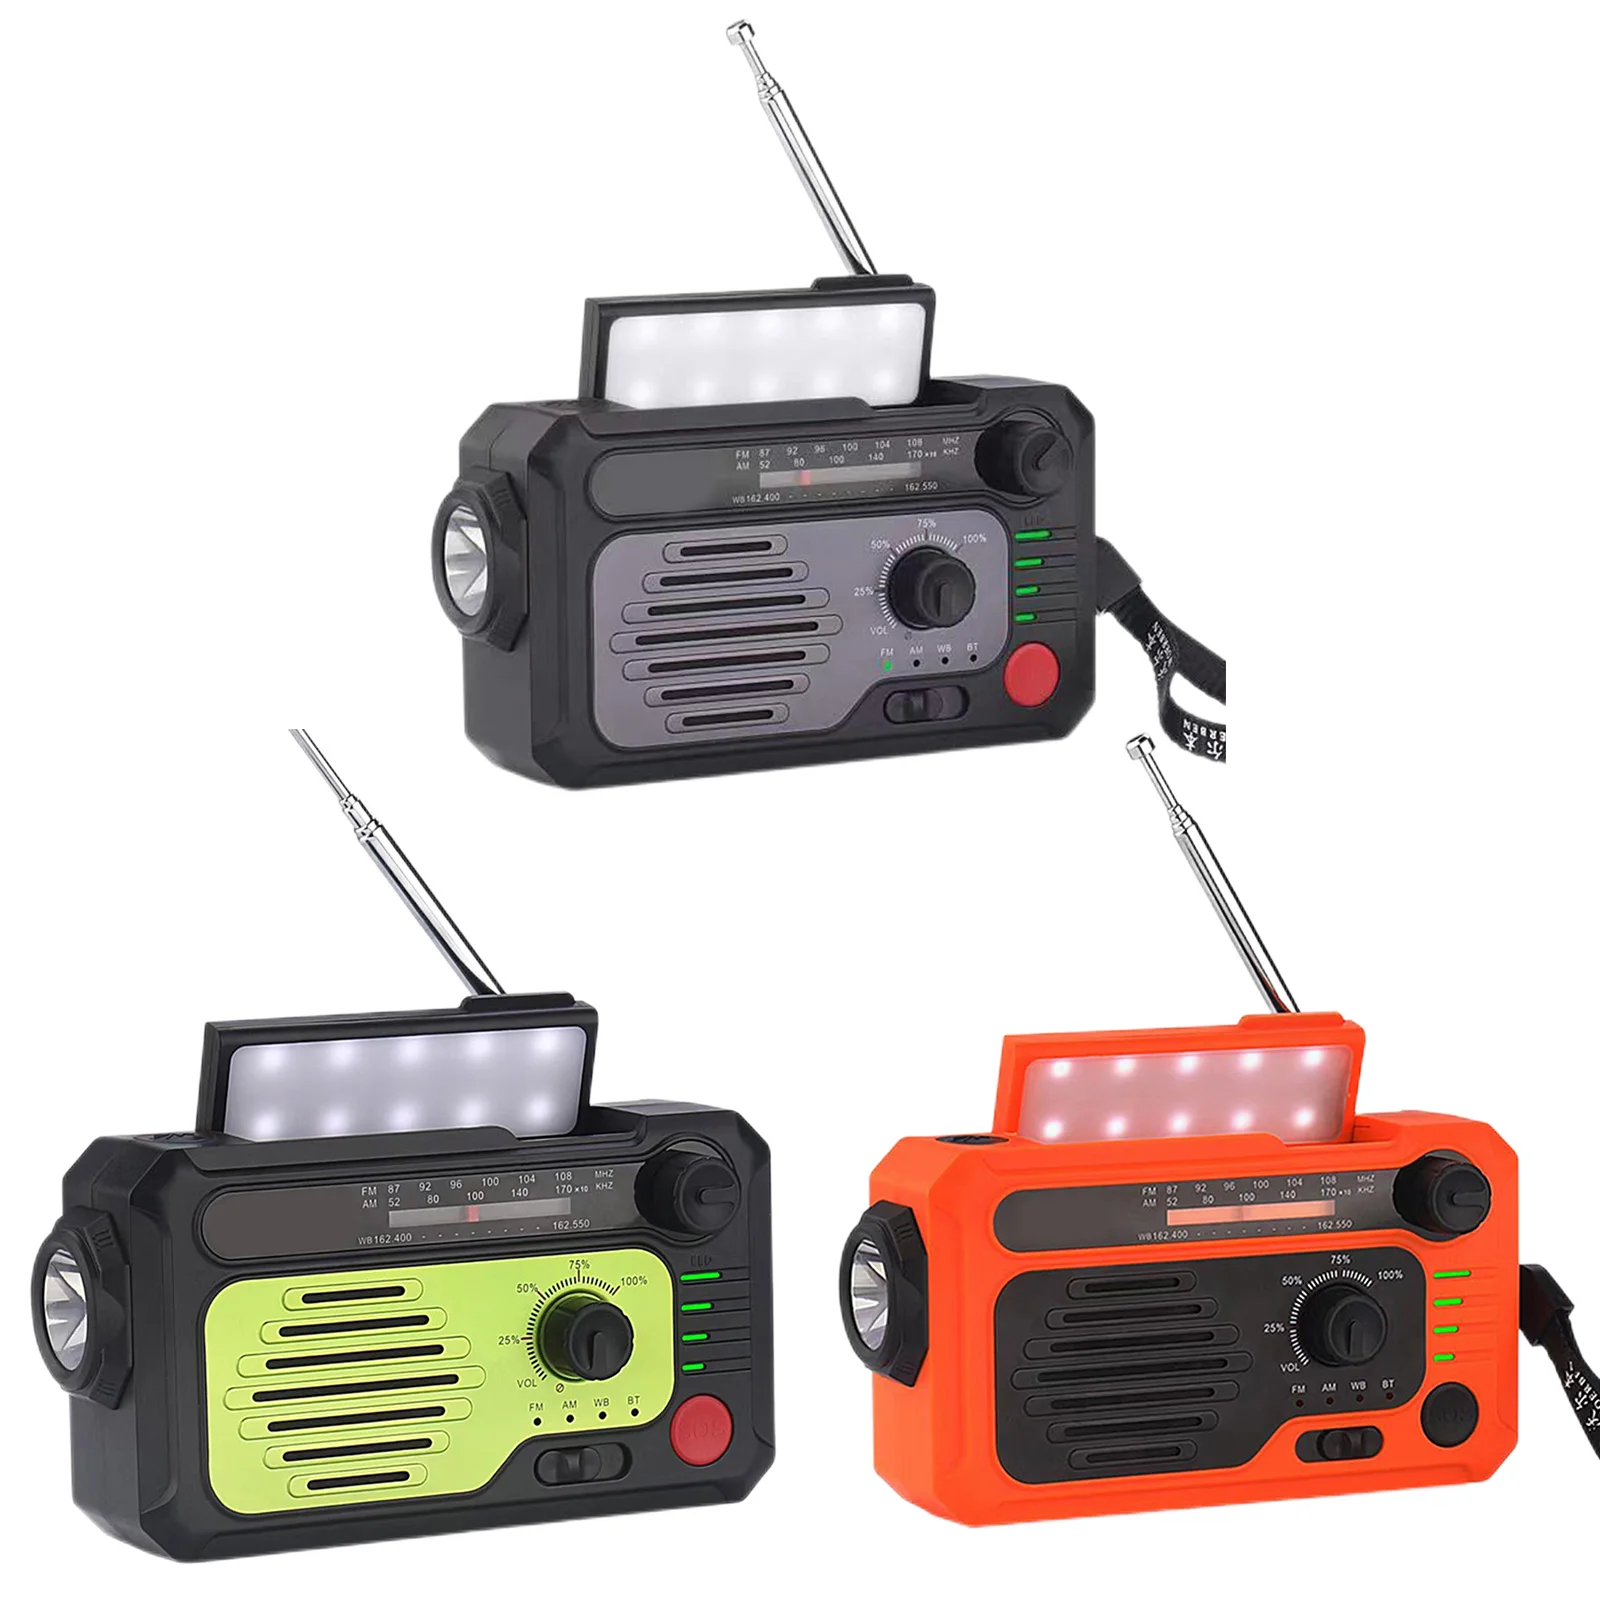 

AM/FM аварийное радио, ручной радиоприемник на солнечной батарее, радио с Bluetooth, 5.0 динамик, светодиодный фонарик, 2000 мАч, внешний аккумулятор, зарядное устройство для телефона